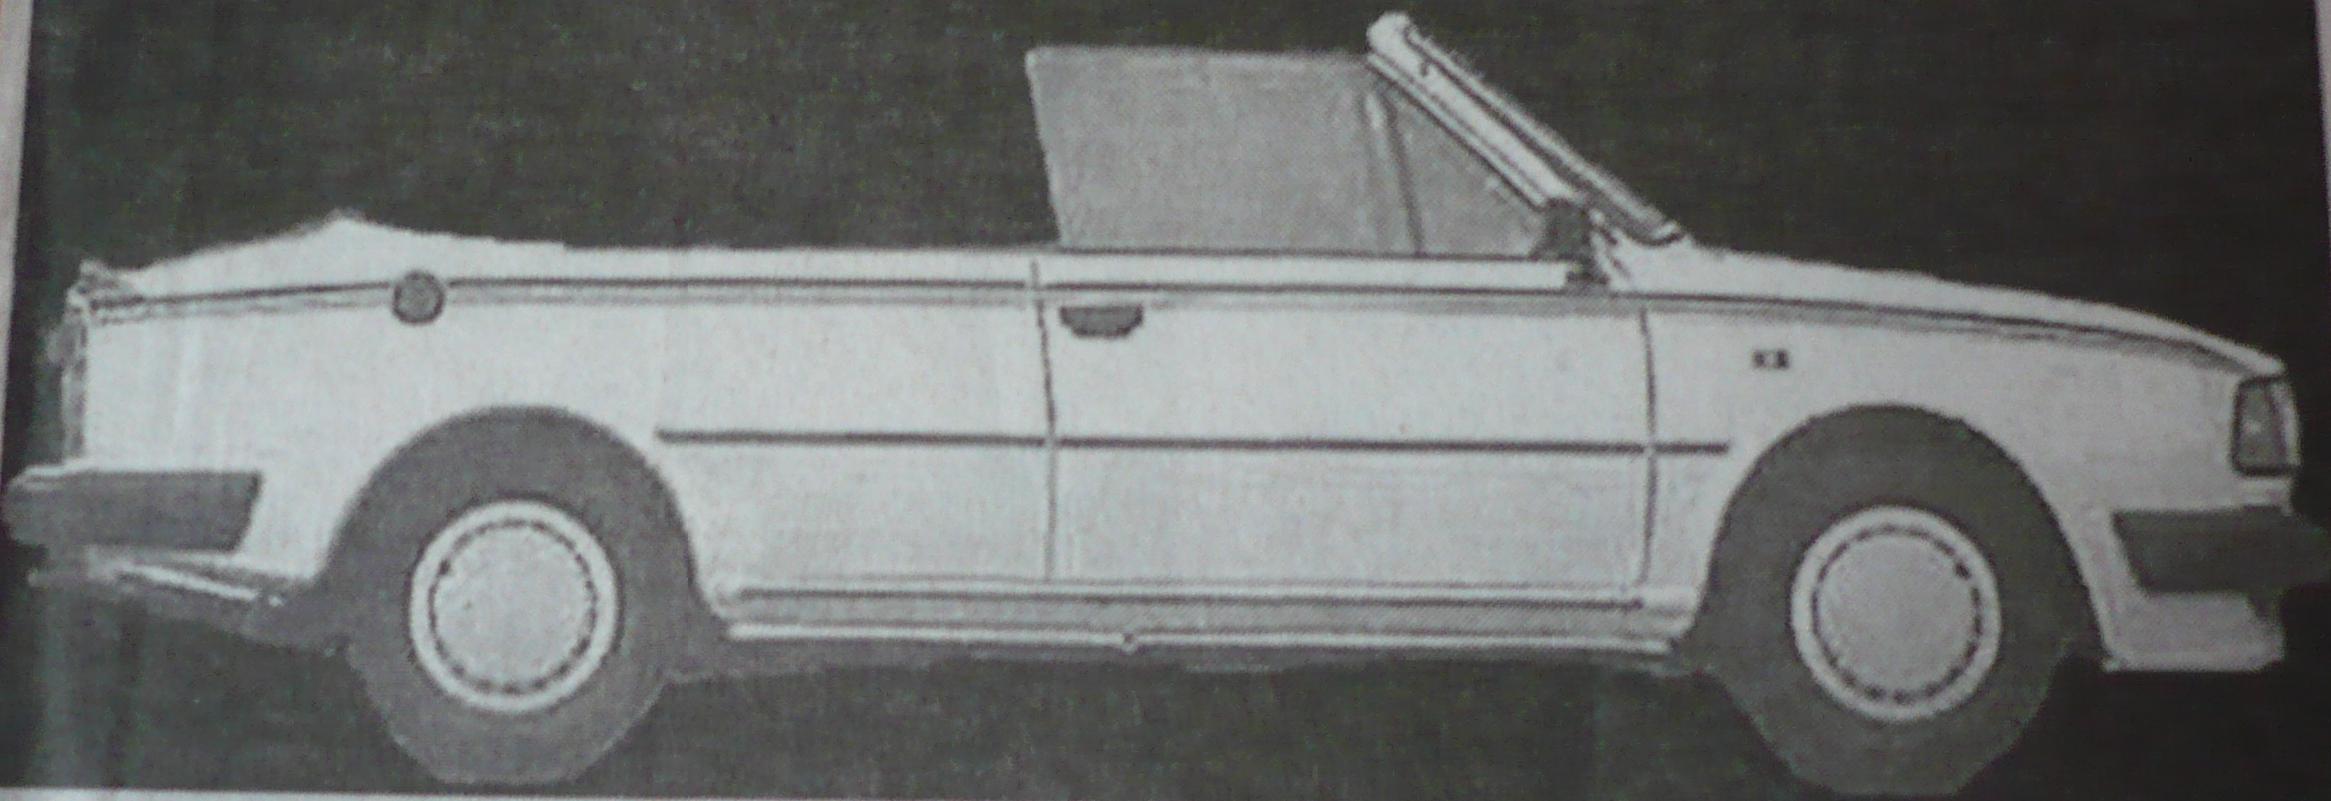 Škoda Rapid Cabrio prototyp